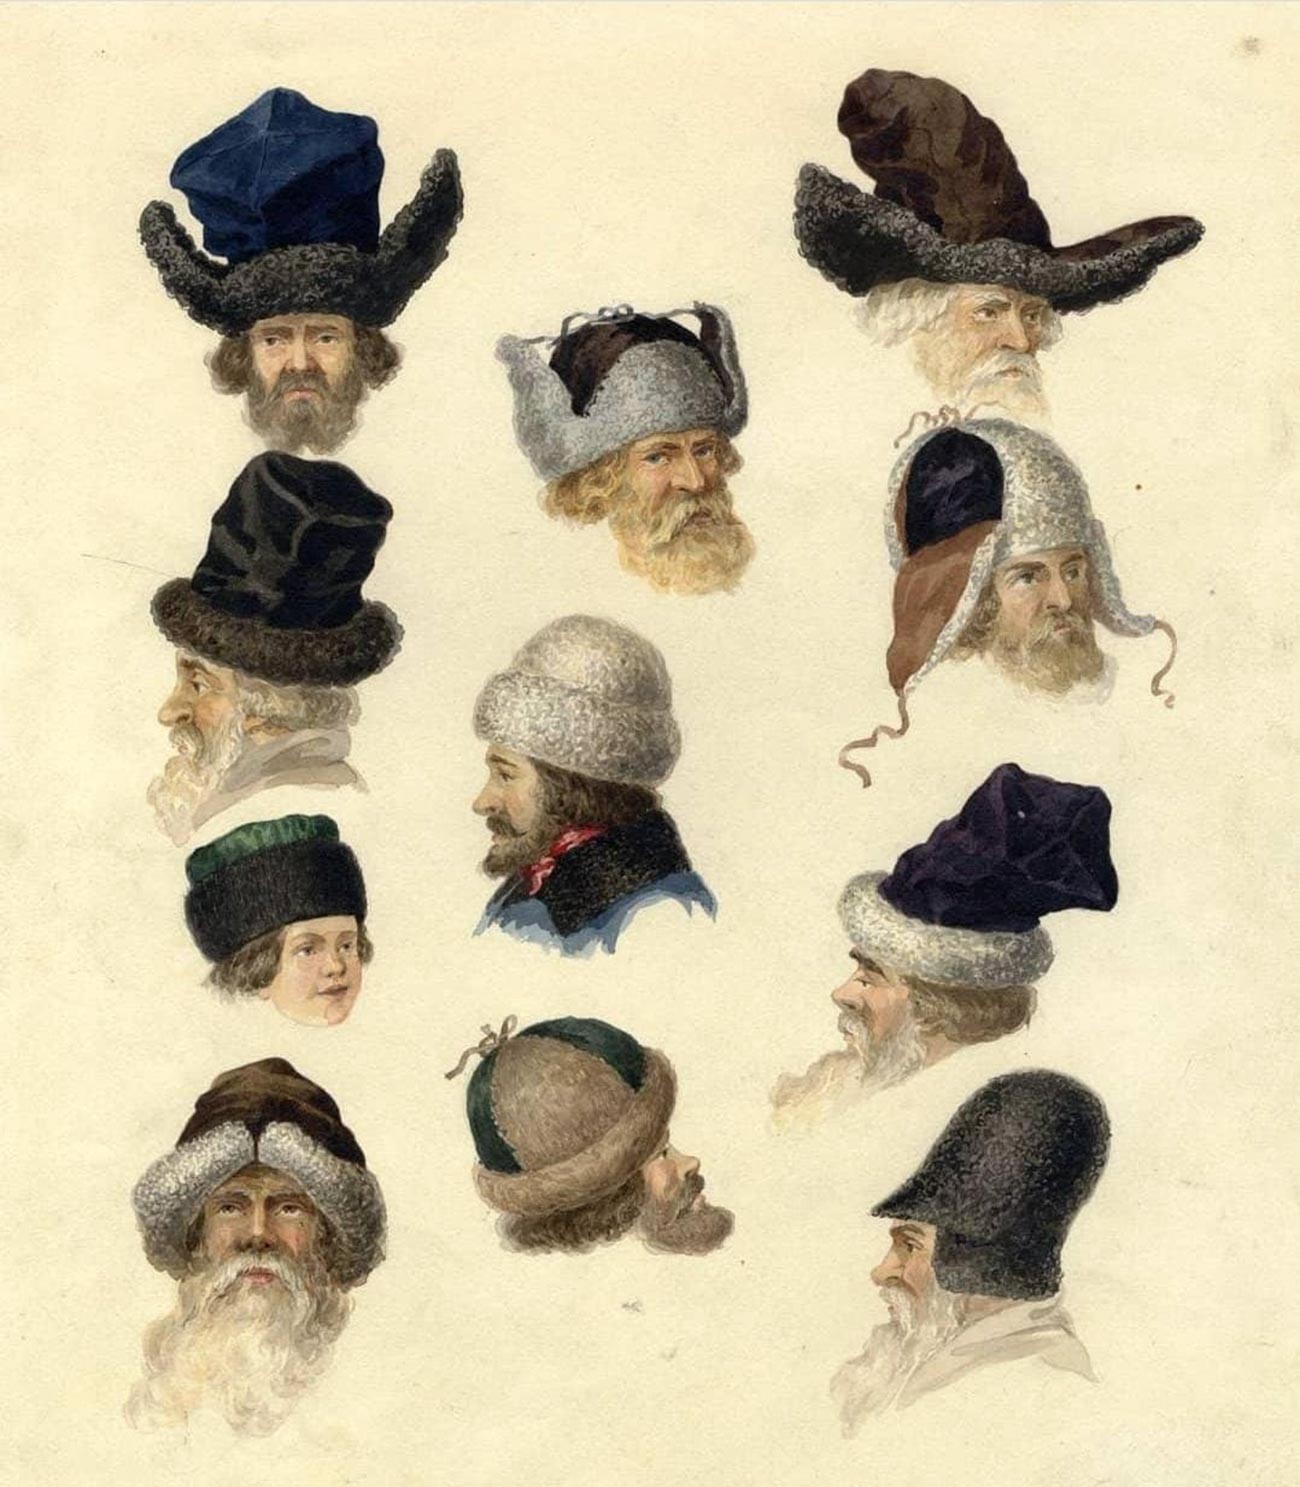 Russian winter hats